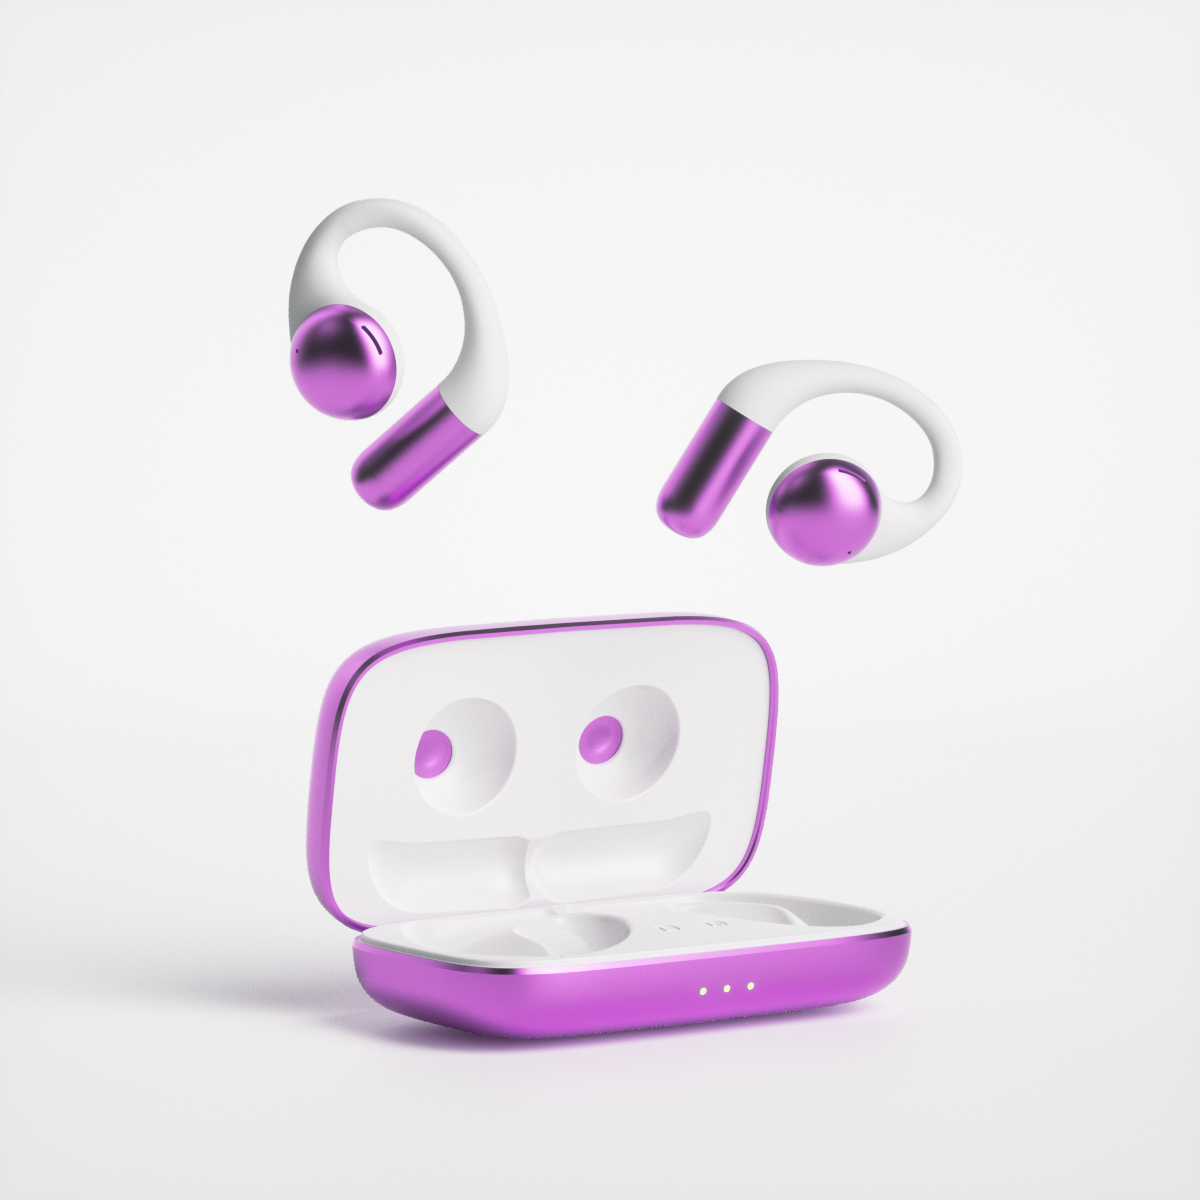 Producto nuevo Auriculares de oreja abierta Auriculares inalámbricos Bluetooth Reducción a prueba de agua Ruidos Ows Auricular 